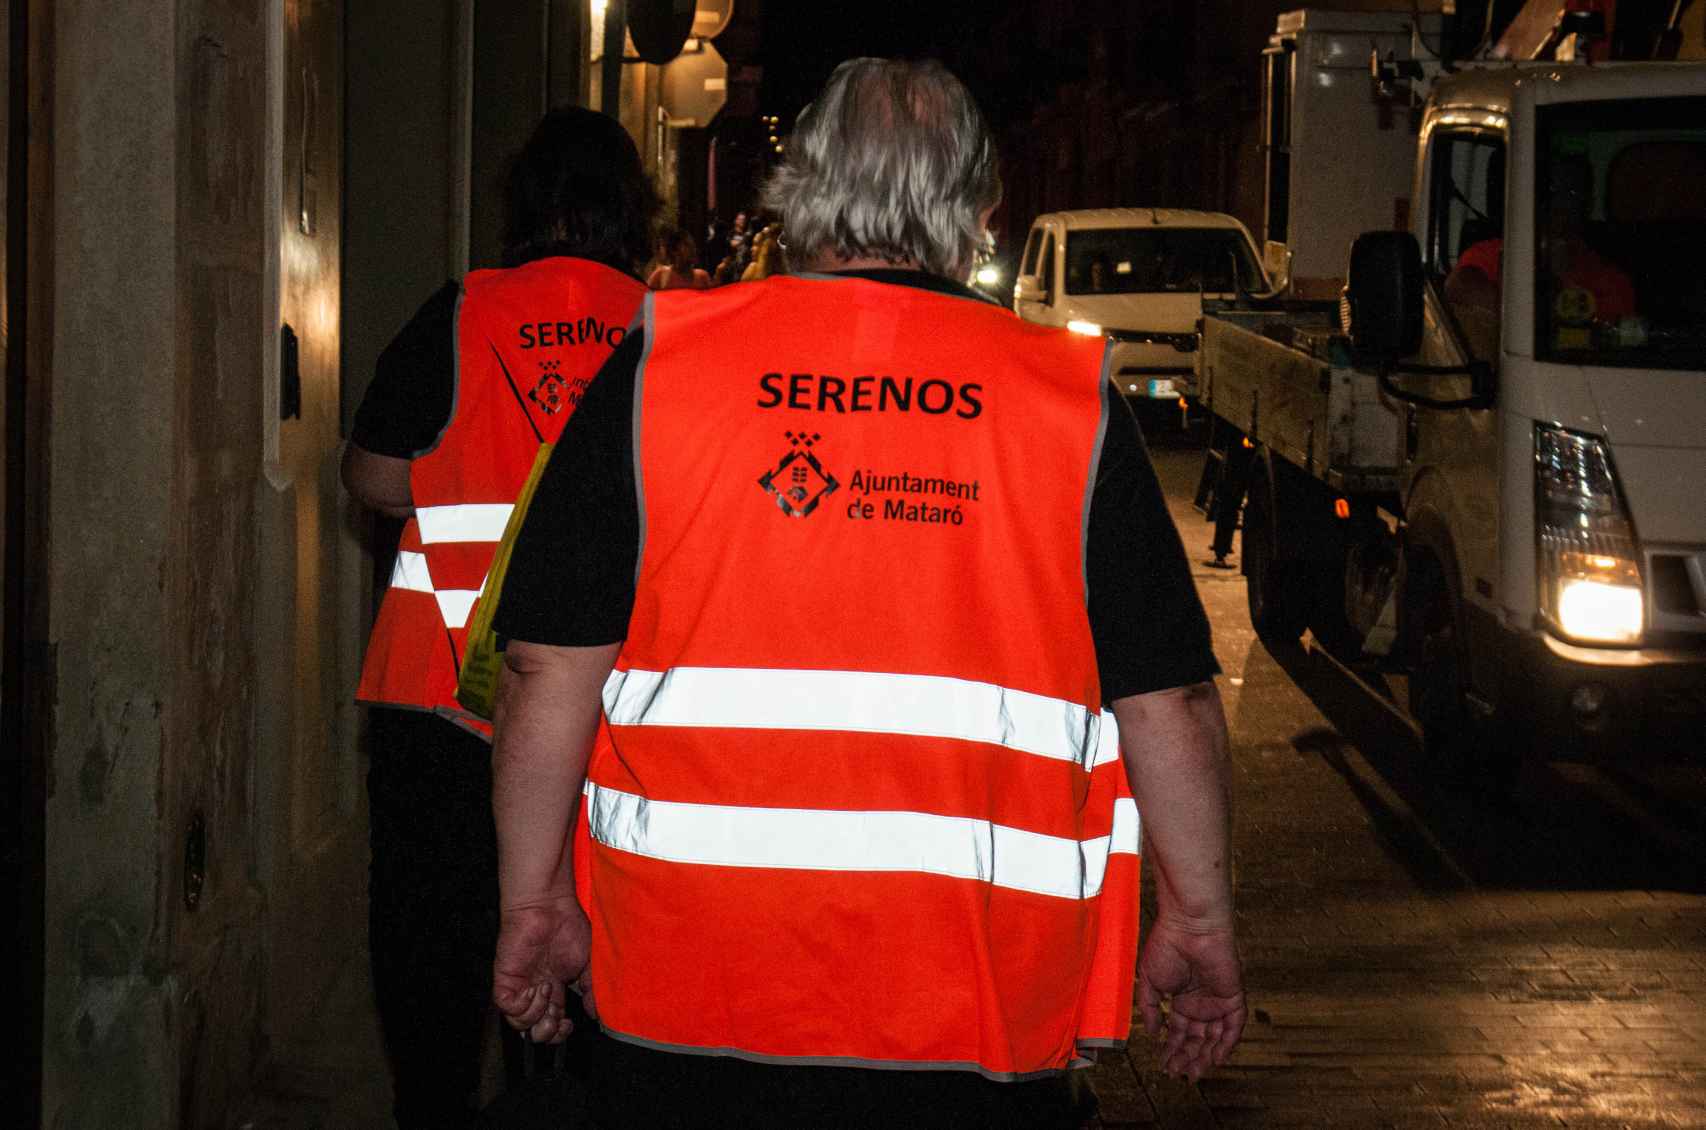 Los serenos patrullando en las calles de Mataró.